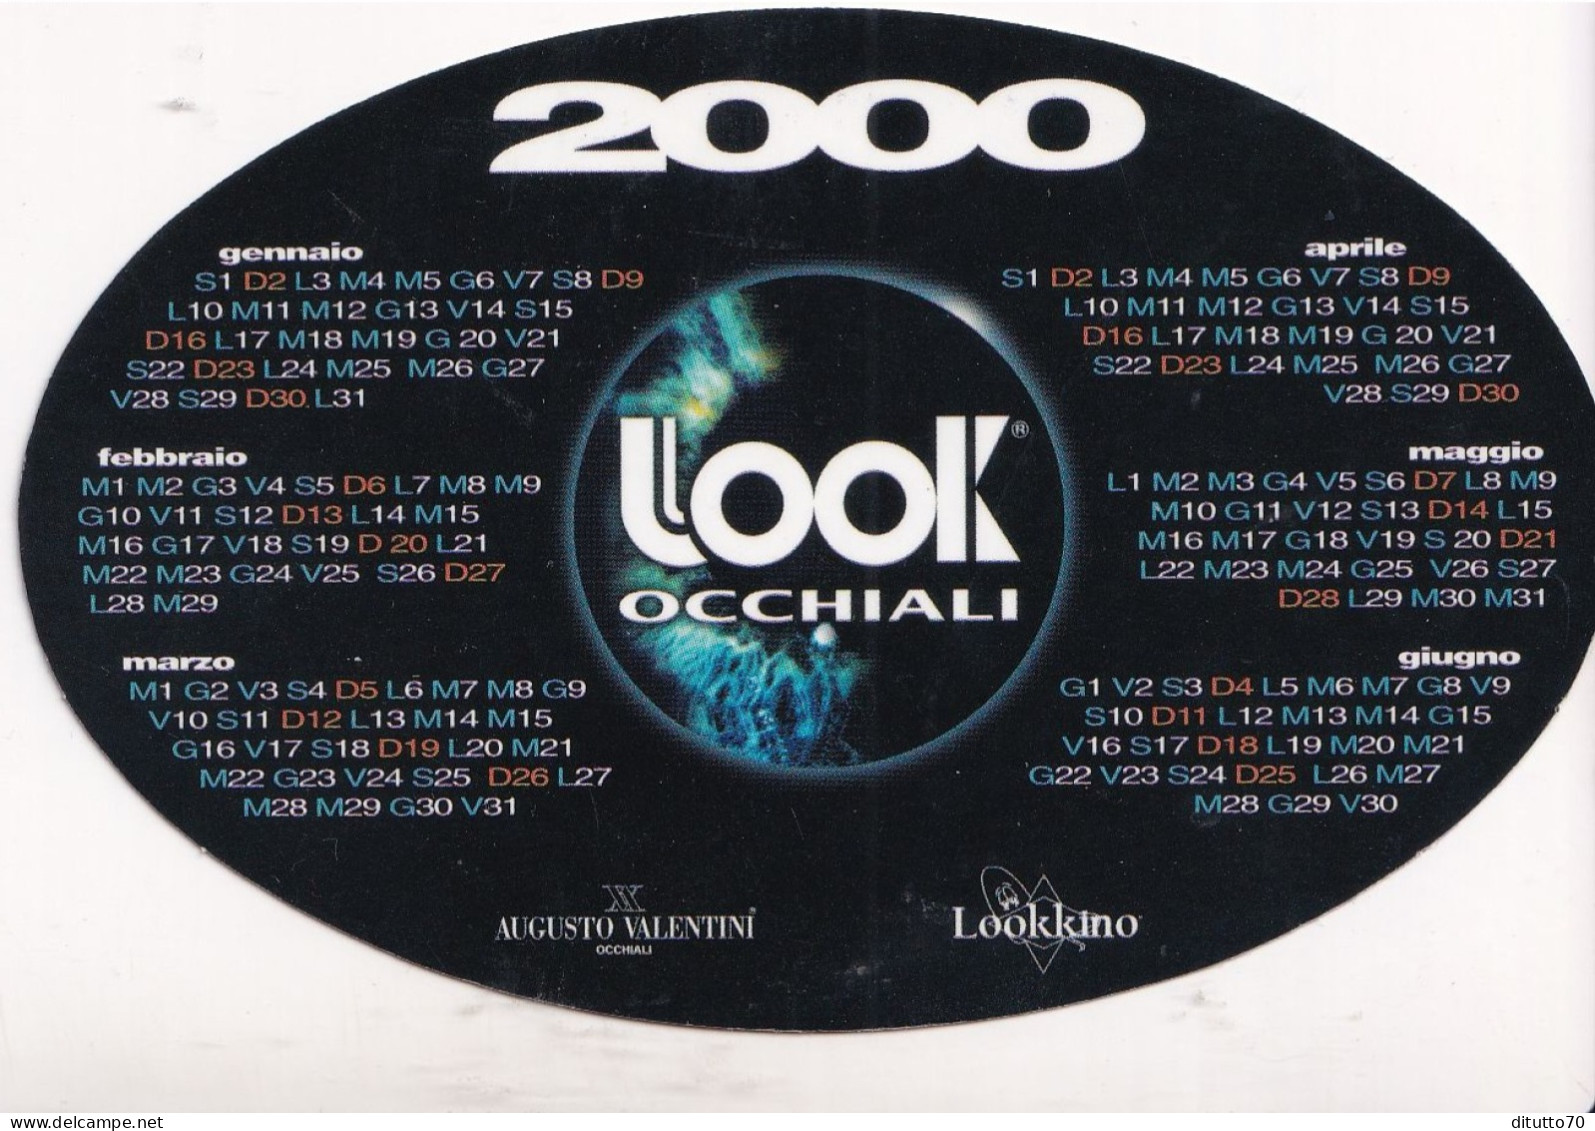 Calendarietto - Look Occhiali - Anno 2000 - Klein Formaat: 1991-00